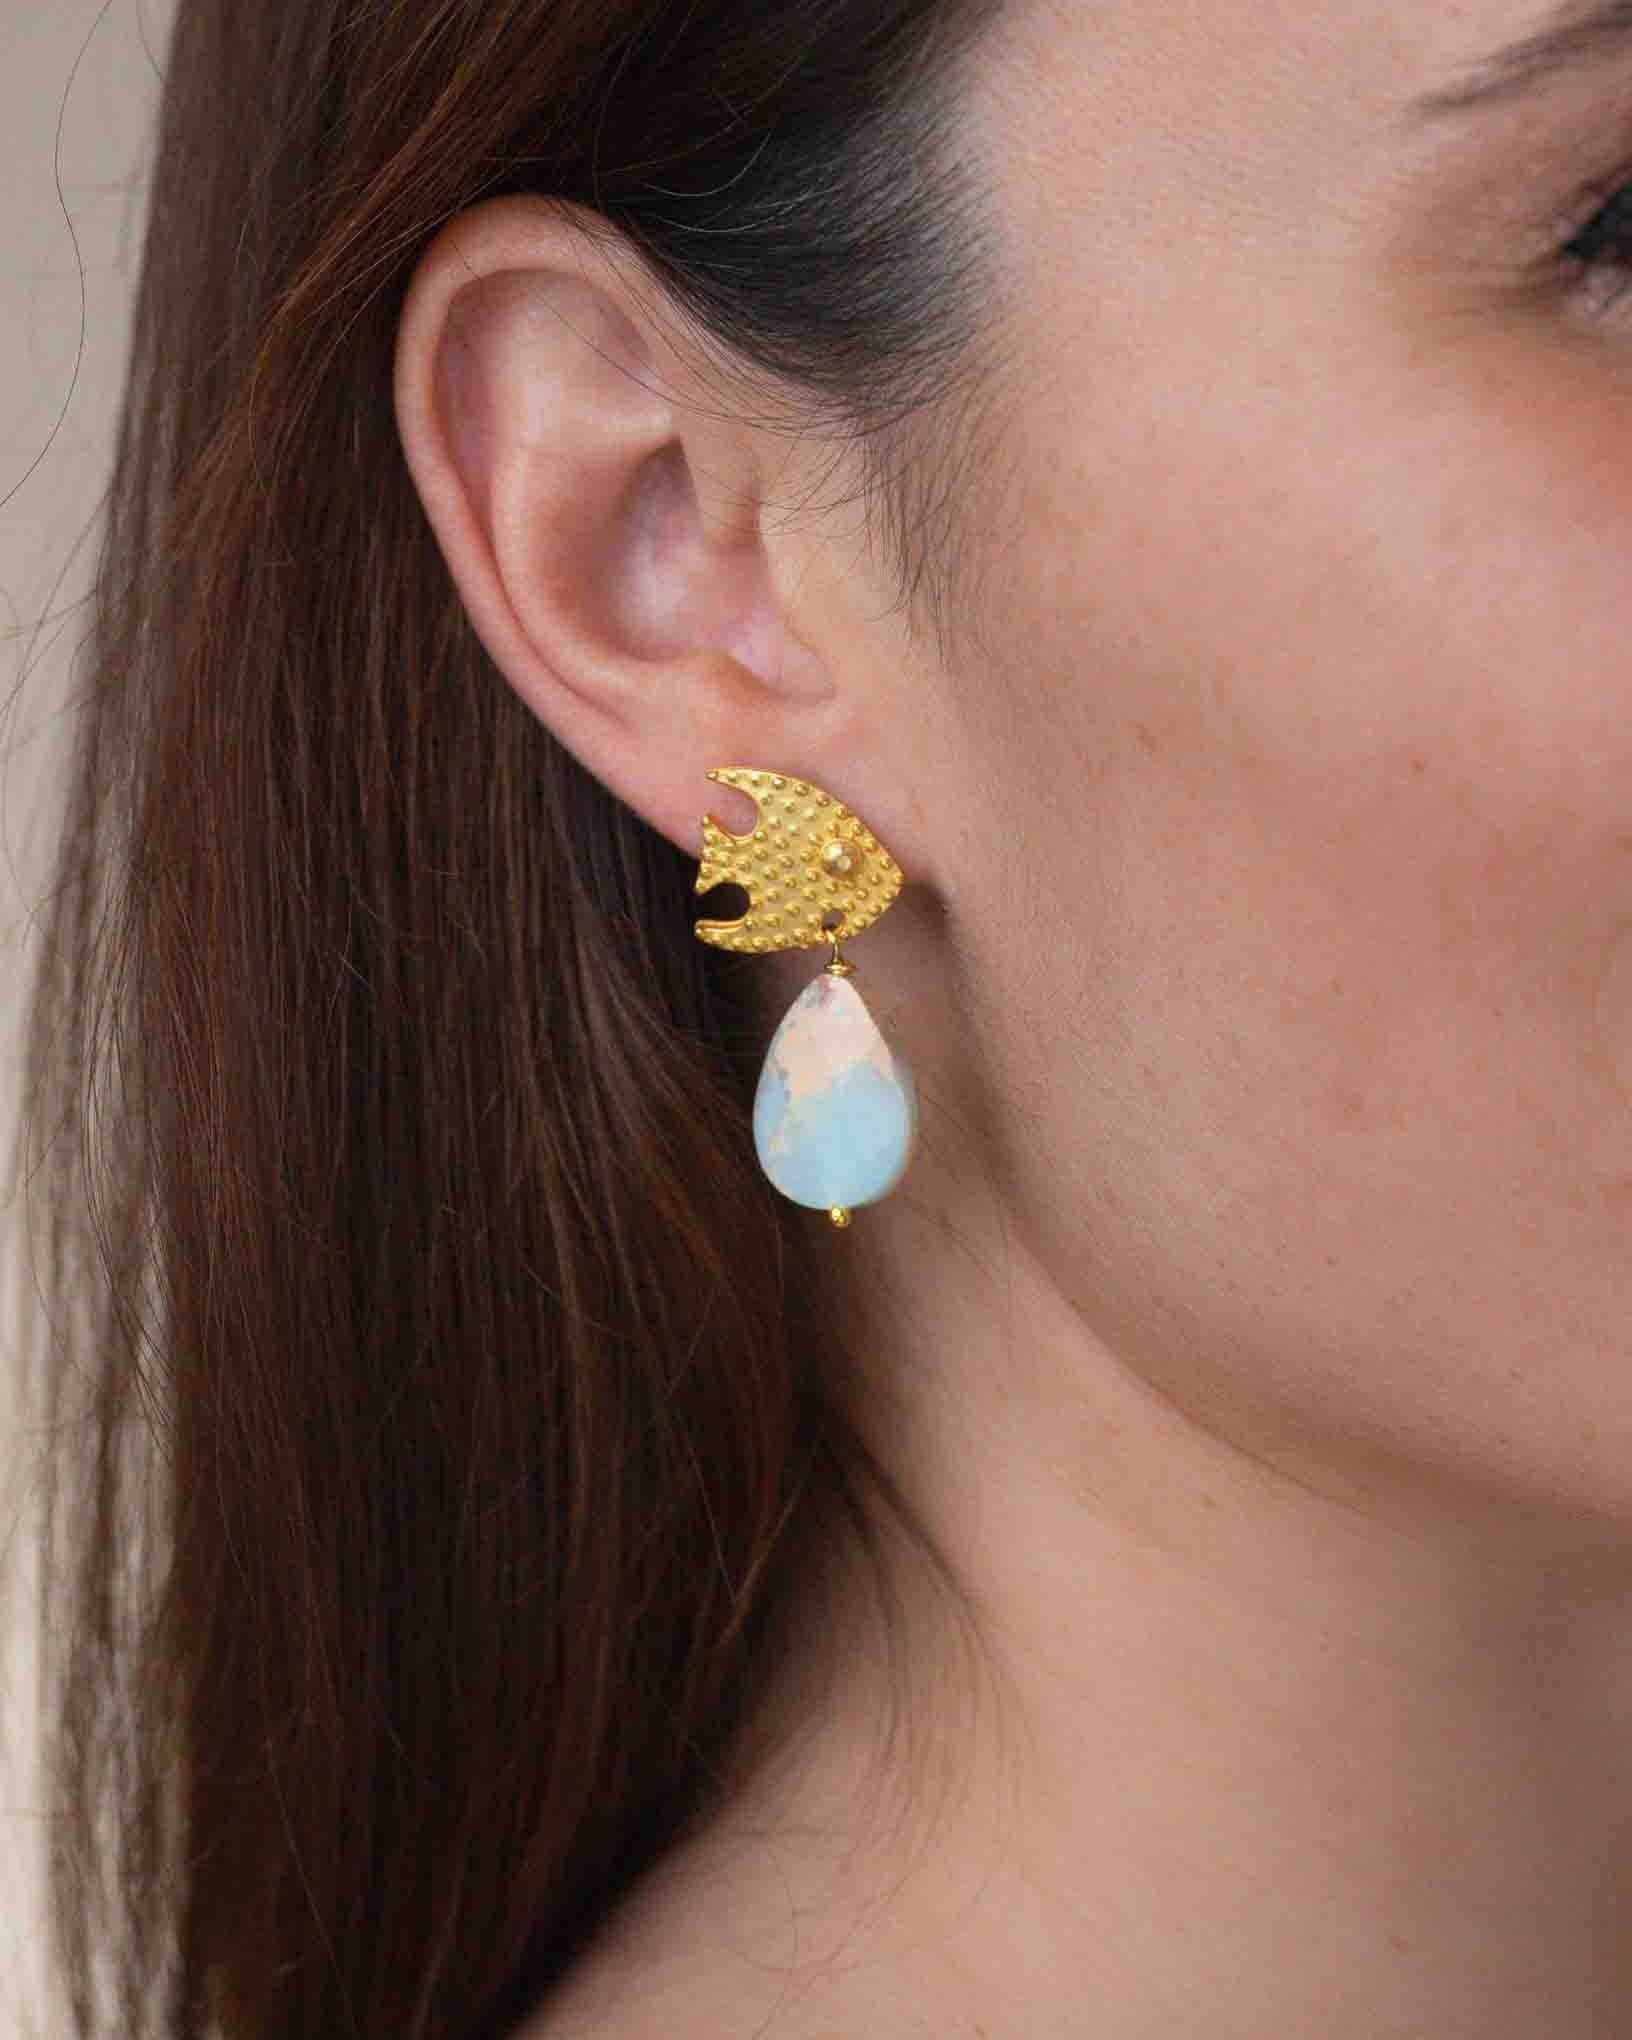 Ohrring Pesce Palla aus der Kollektion I Classici von Donna Rachele Jewelry